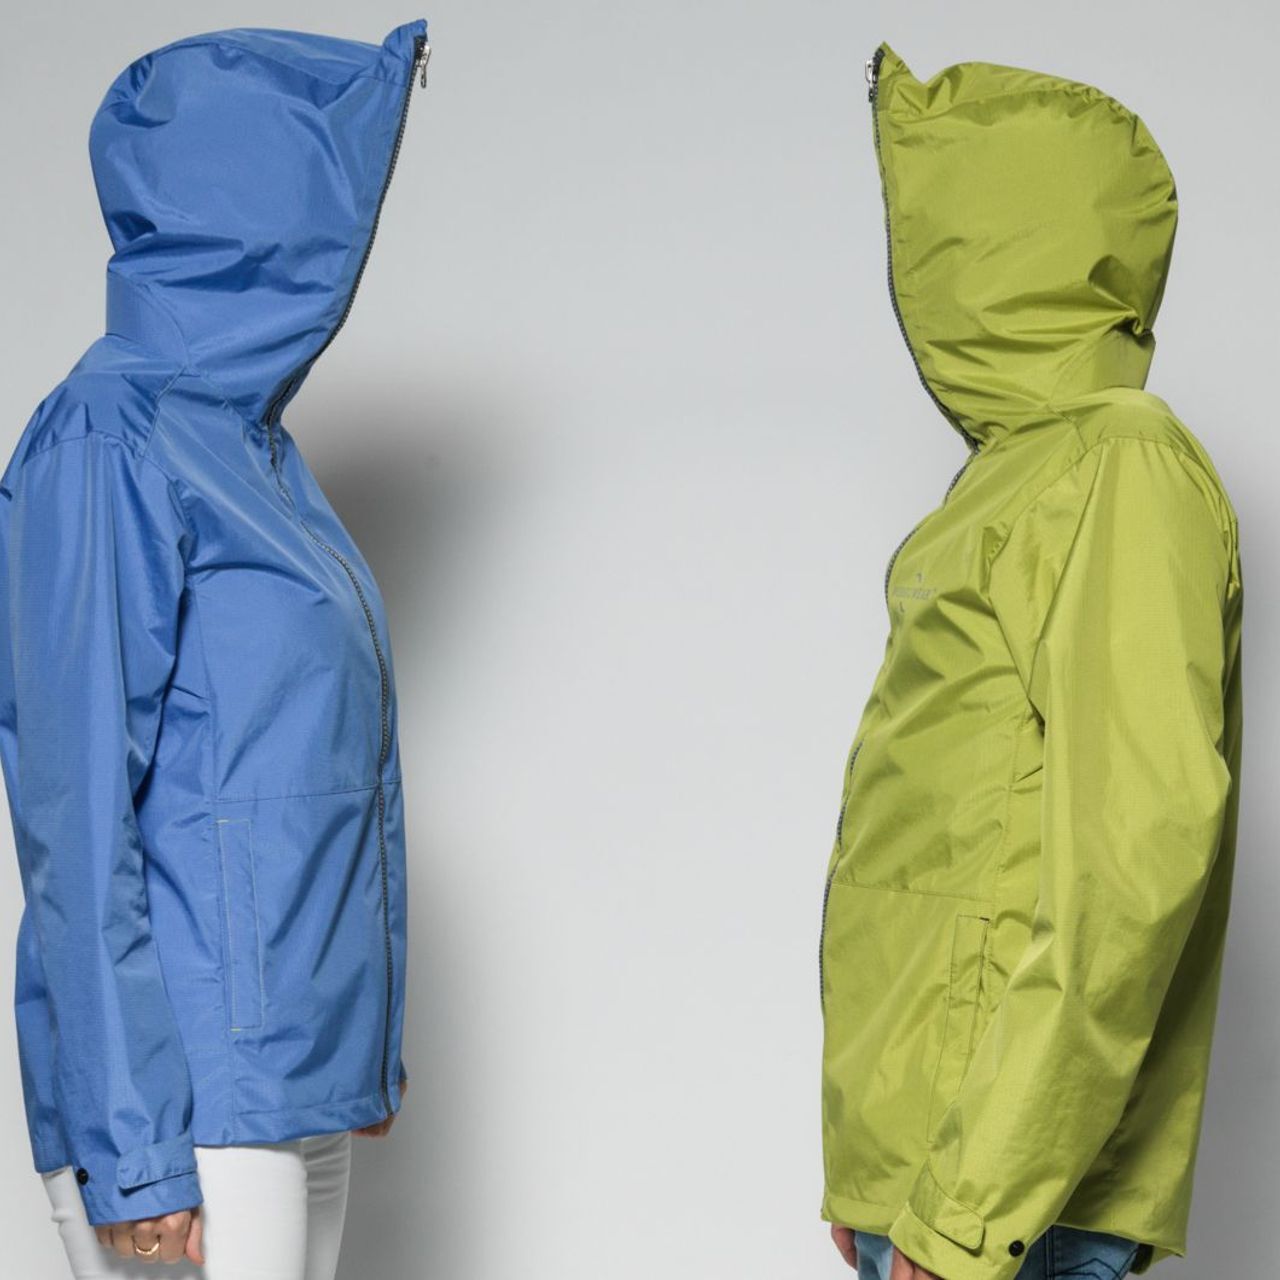 Due varianti della giacca “ecoloigica” Wear2Wear: blu o verde? Lo strato esterno della 